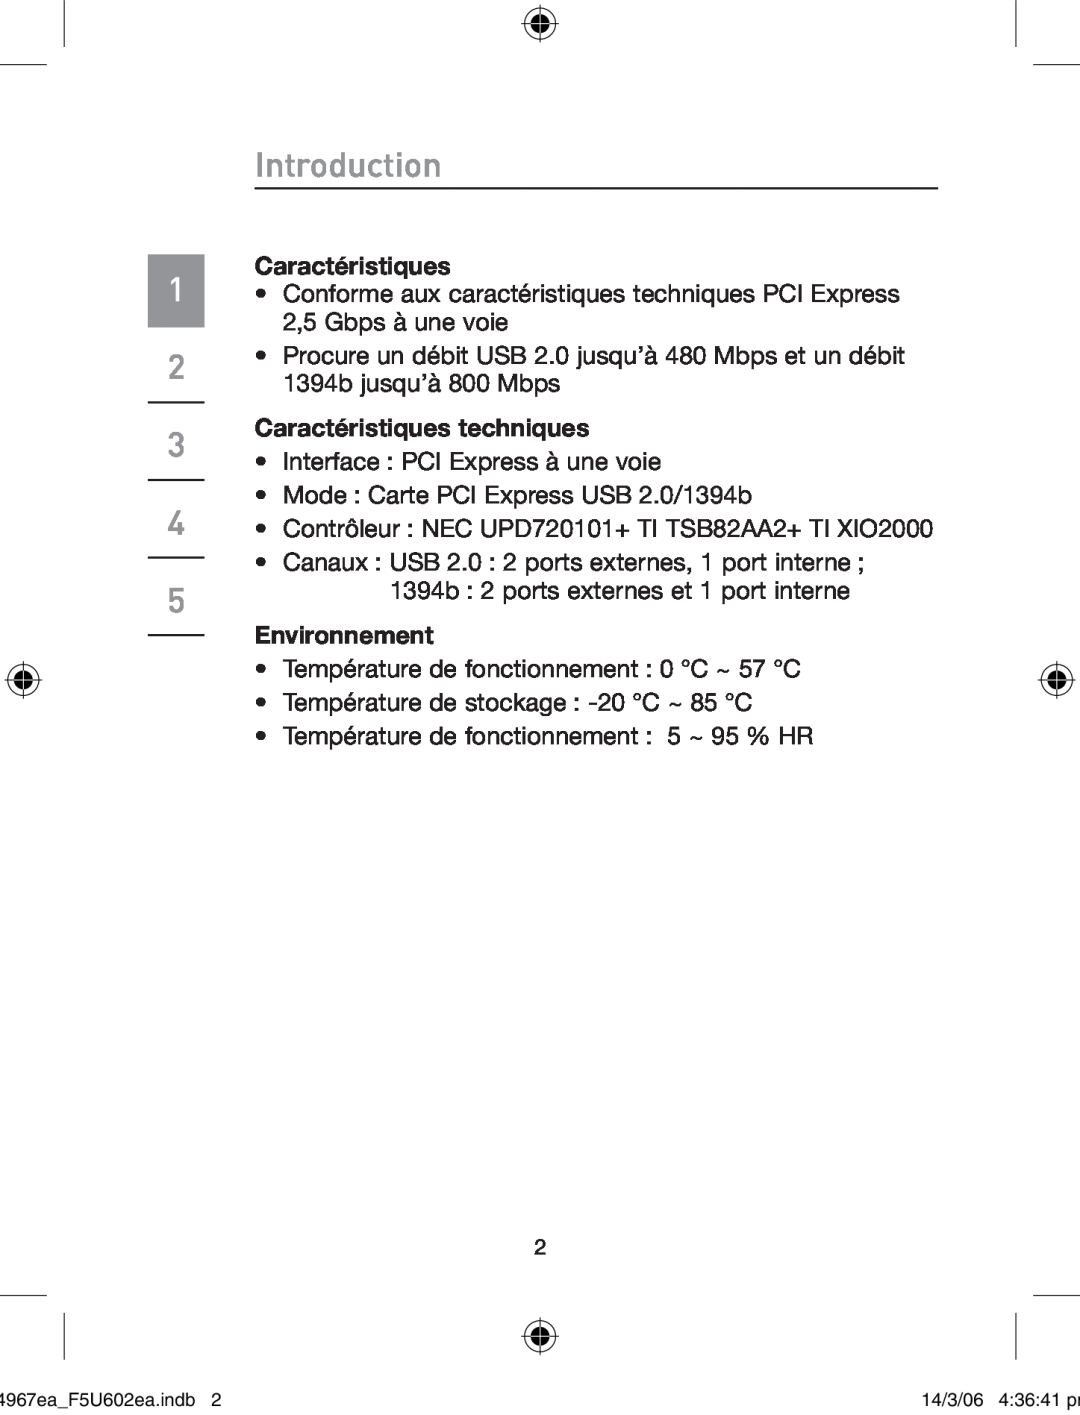 Belkin F5U602EA user manual Caractéristiques techniques, Environnement, Introduction 